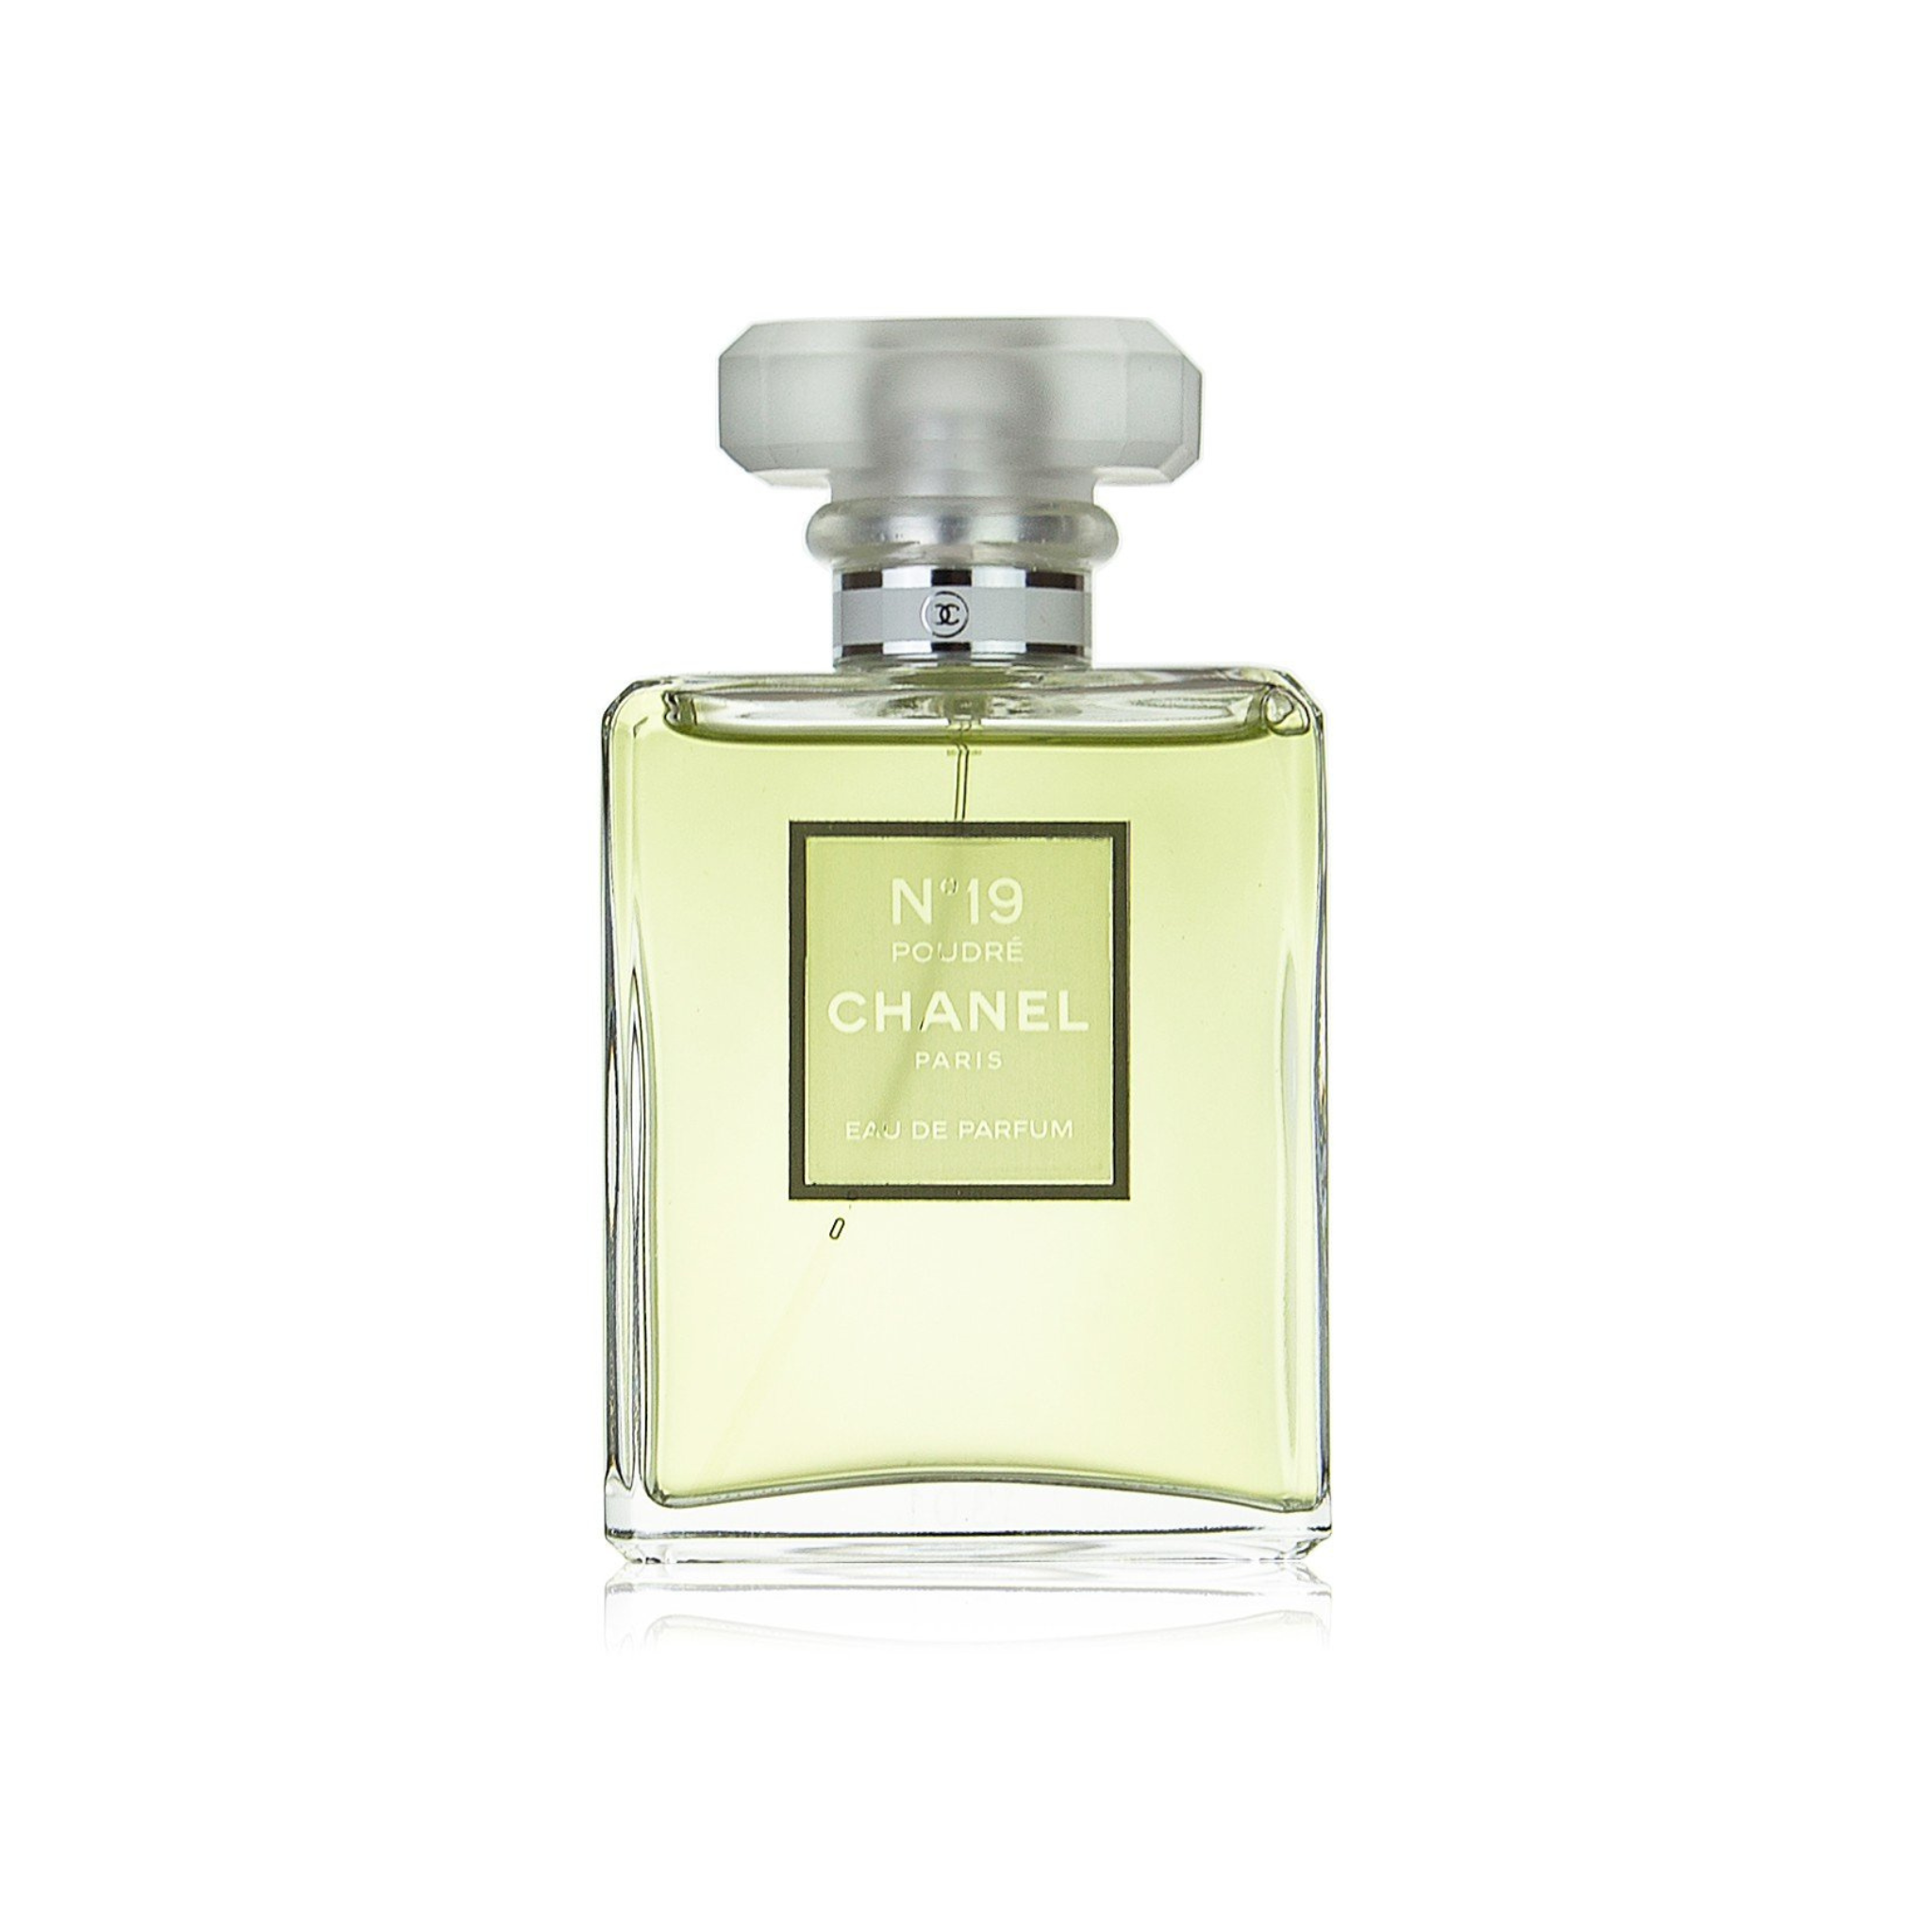 Chanel 19 Poudre Eau de Parfum Spray 3.4 oz (women)